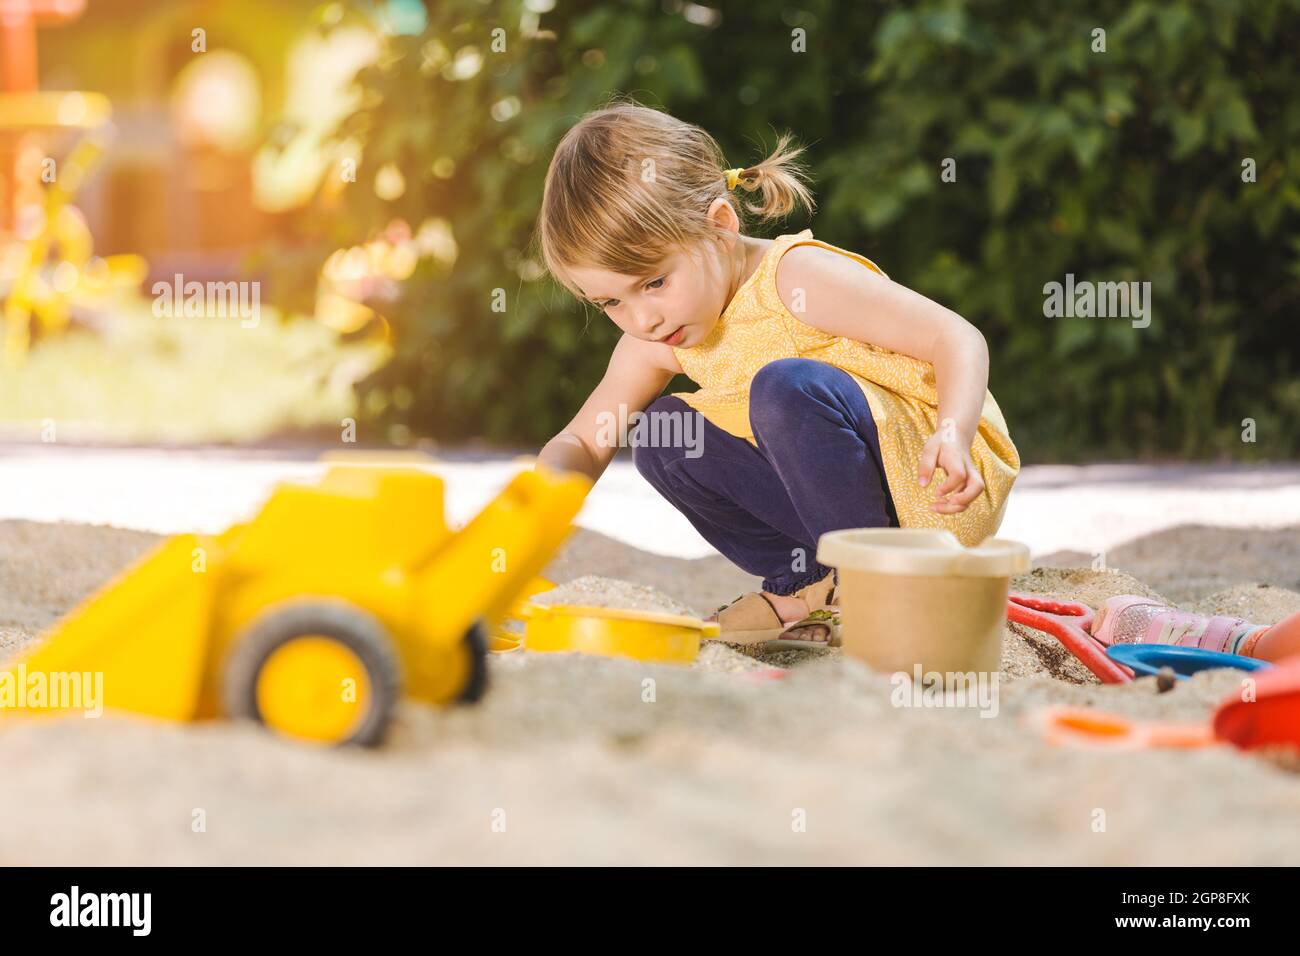 A Escola Com Grande Plástico Escava Um Túnel O Jogo Para Crianças Em Idade  Pré-escolar Foto de Stock - Imagem de playtime, kindergarten: 82542640